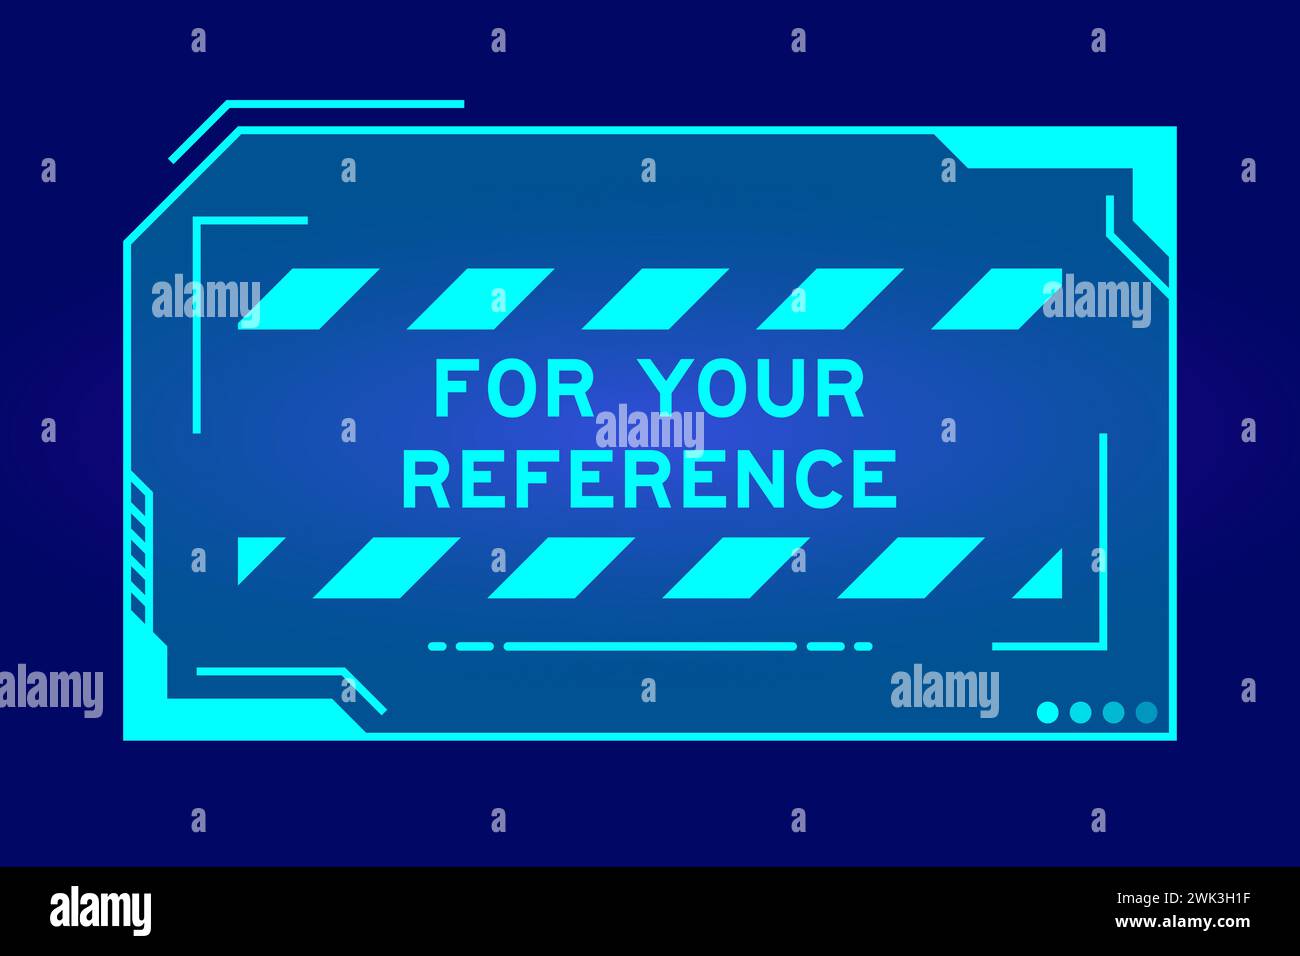 Couleur bleue de bannière hud futuriste qui ont le mot pour votre référence sur l'écran de l'interface utilisateur sur fond noir Illustration de Vecteur